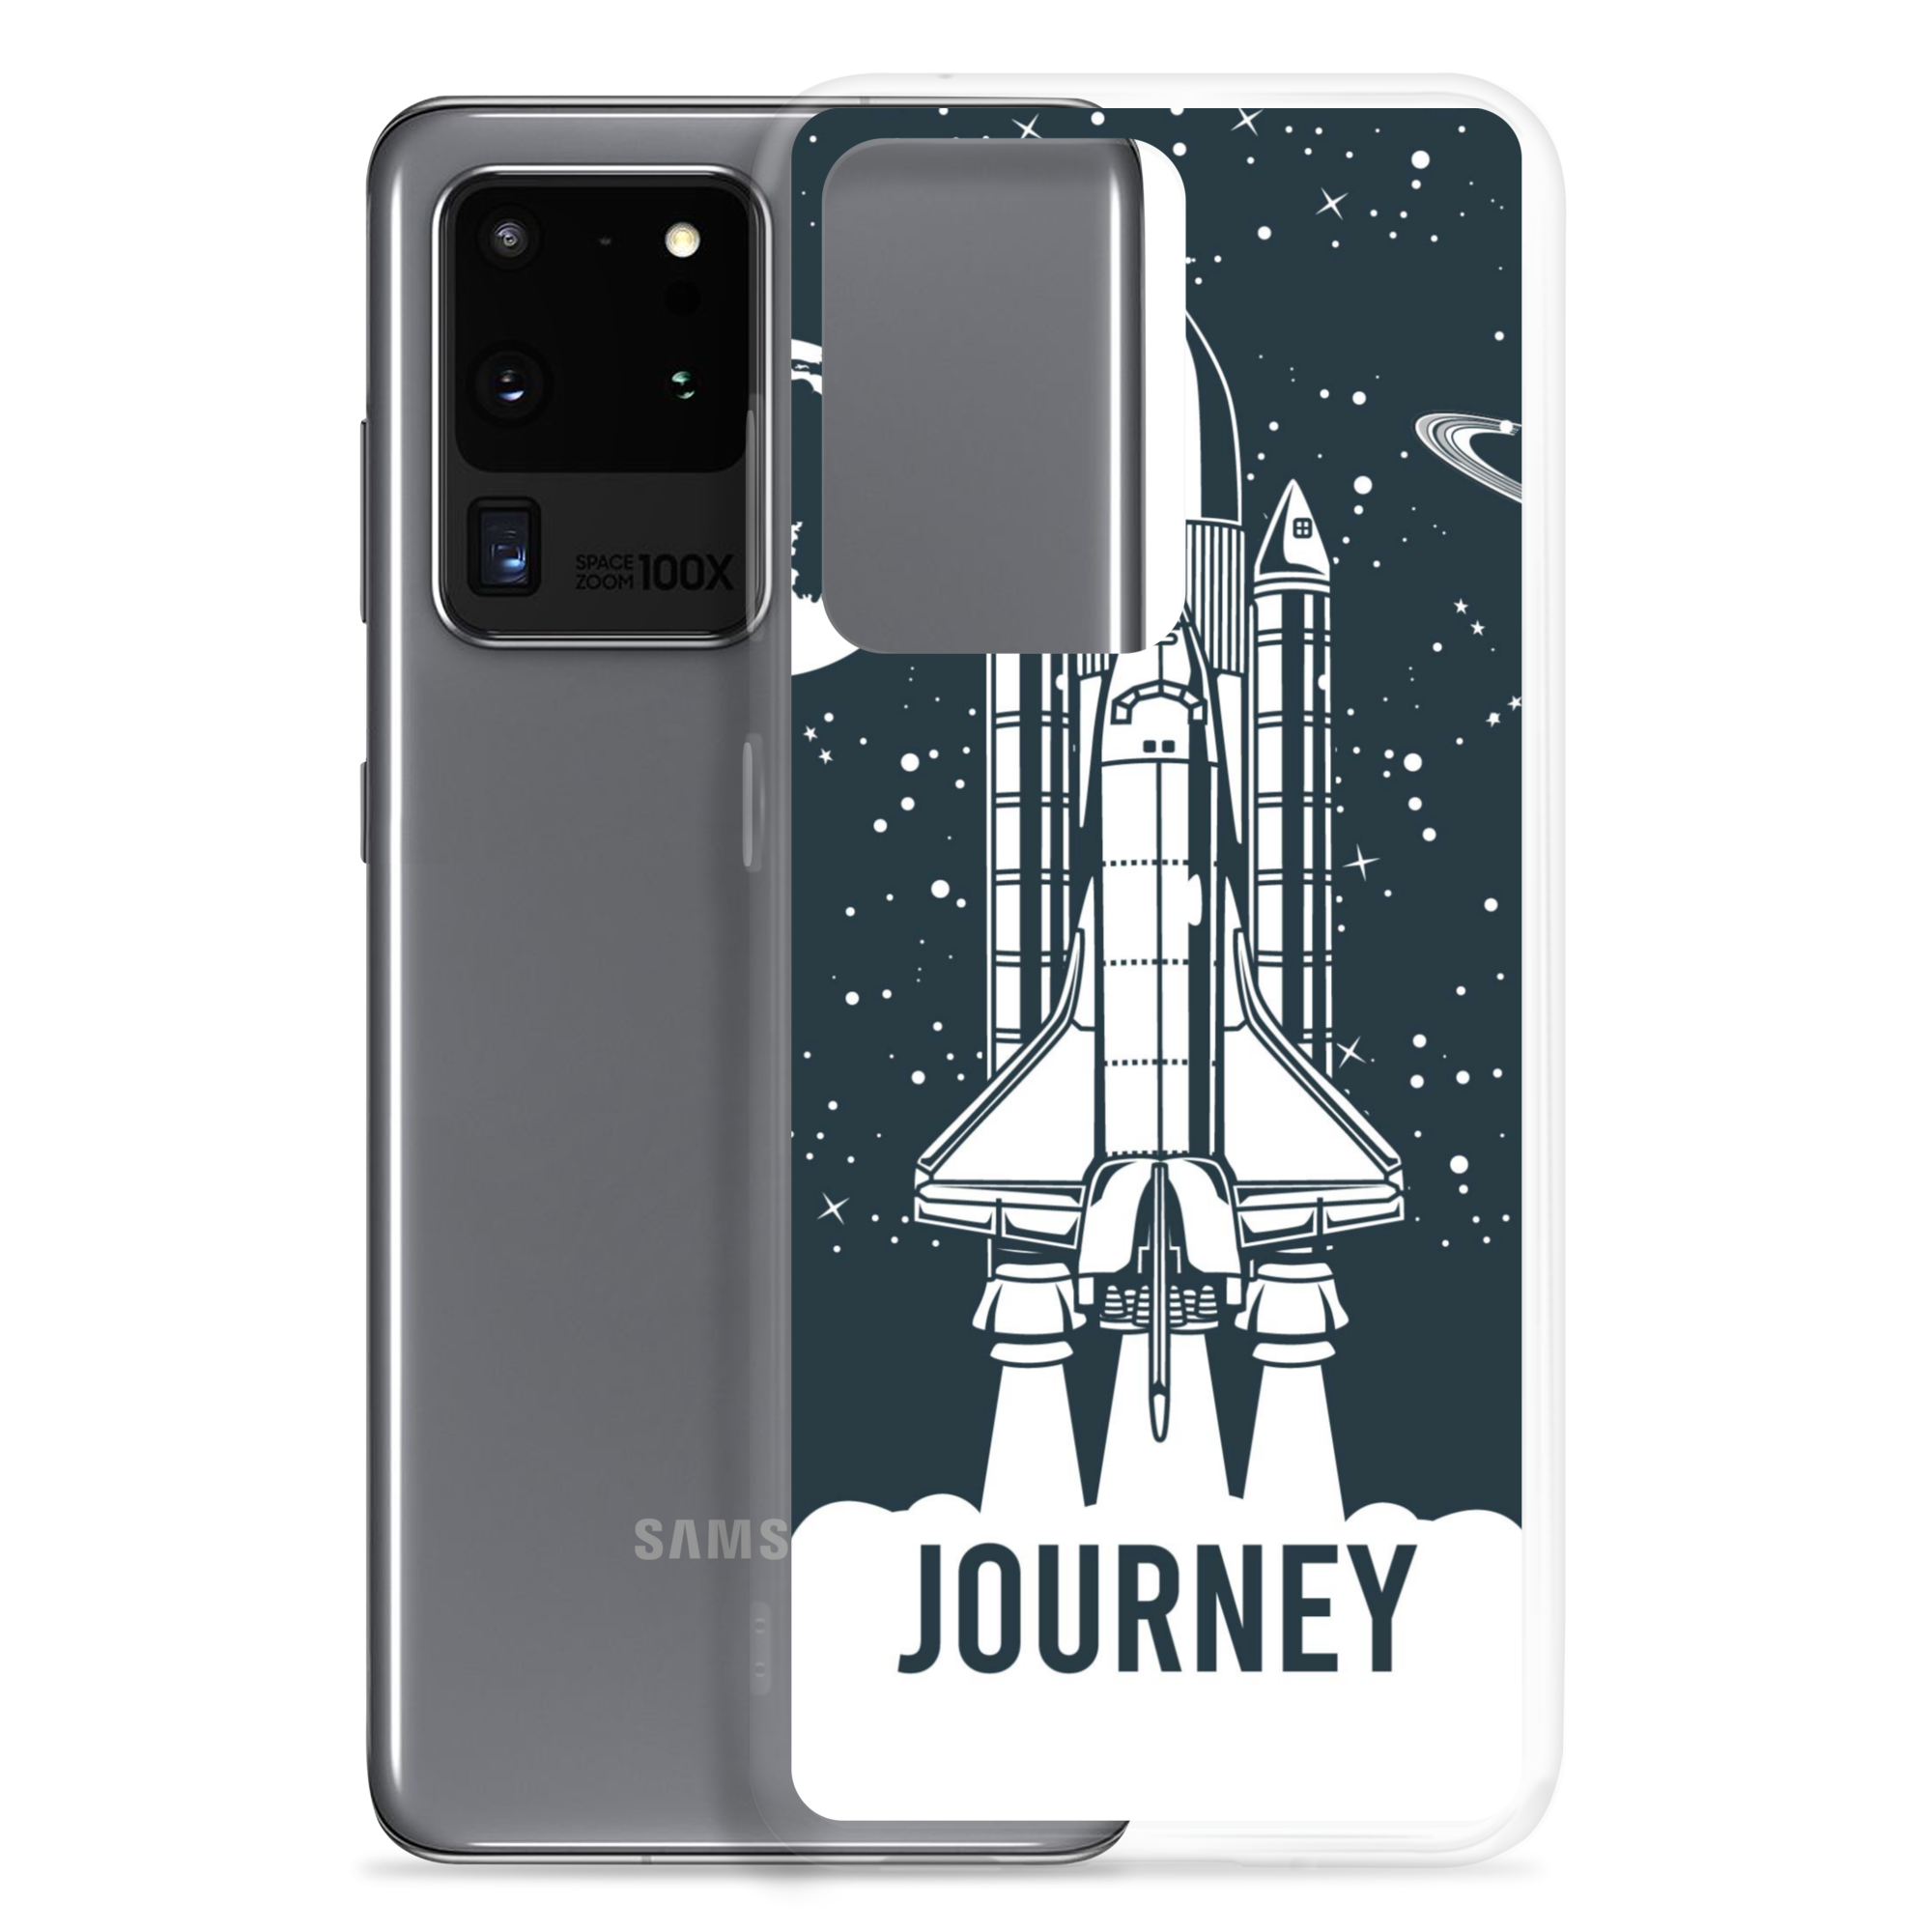 Carcasa transparente  Samsung® Journey